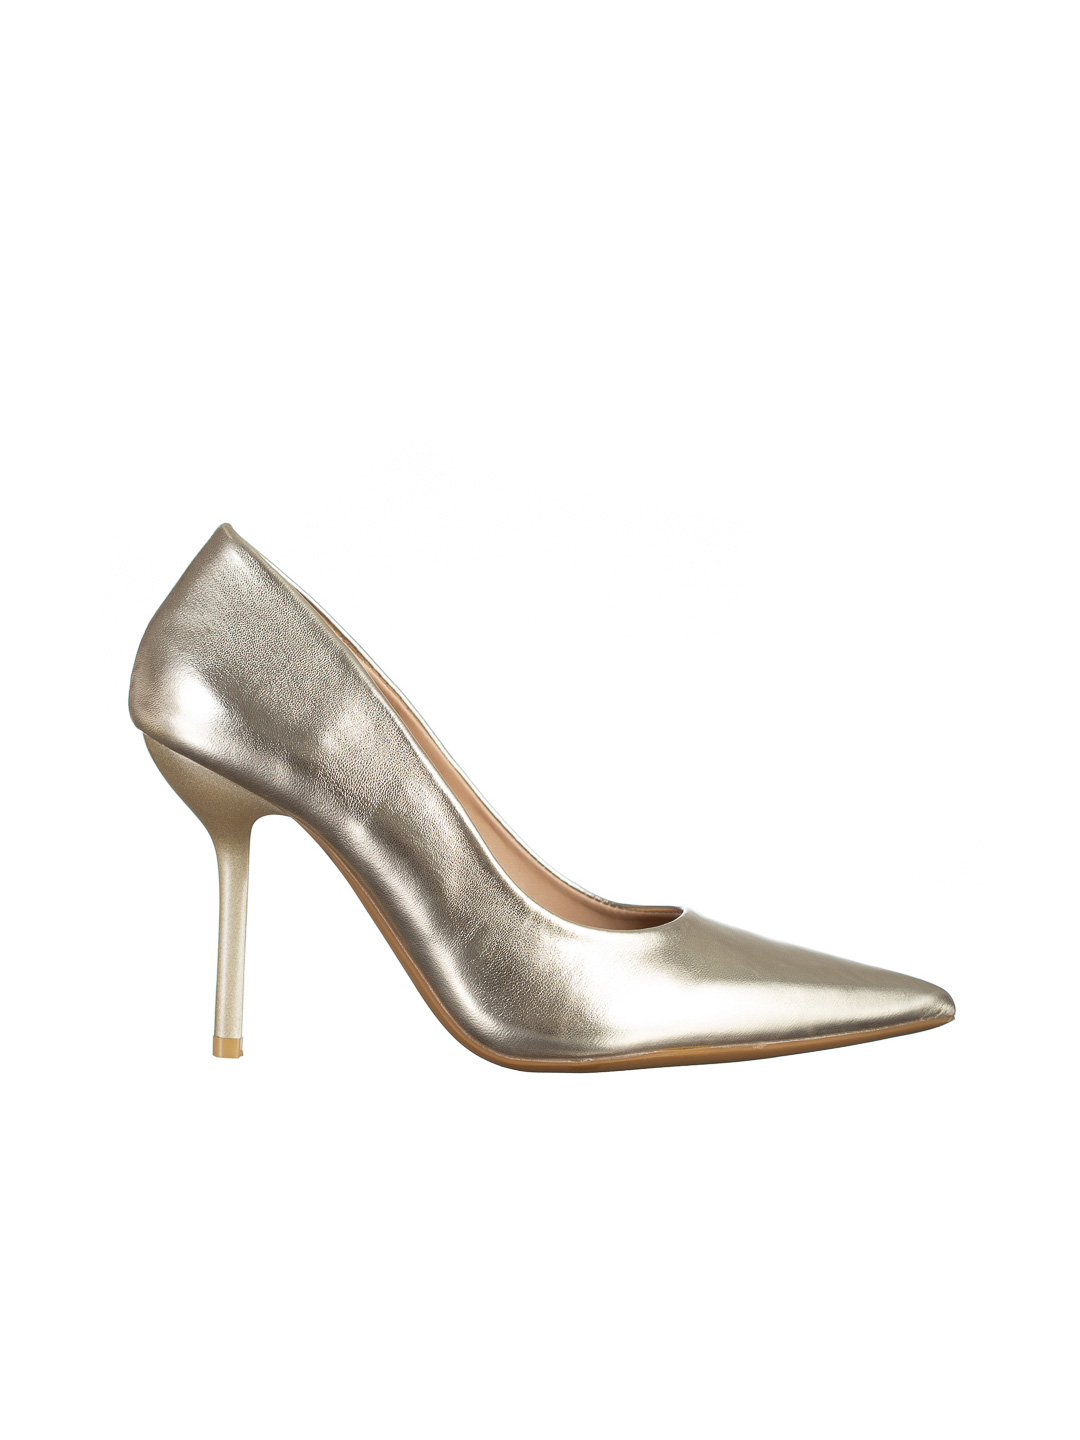 Leya arany női cipő, műbőrből készült, 6 - Kalapod.hu